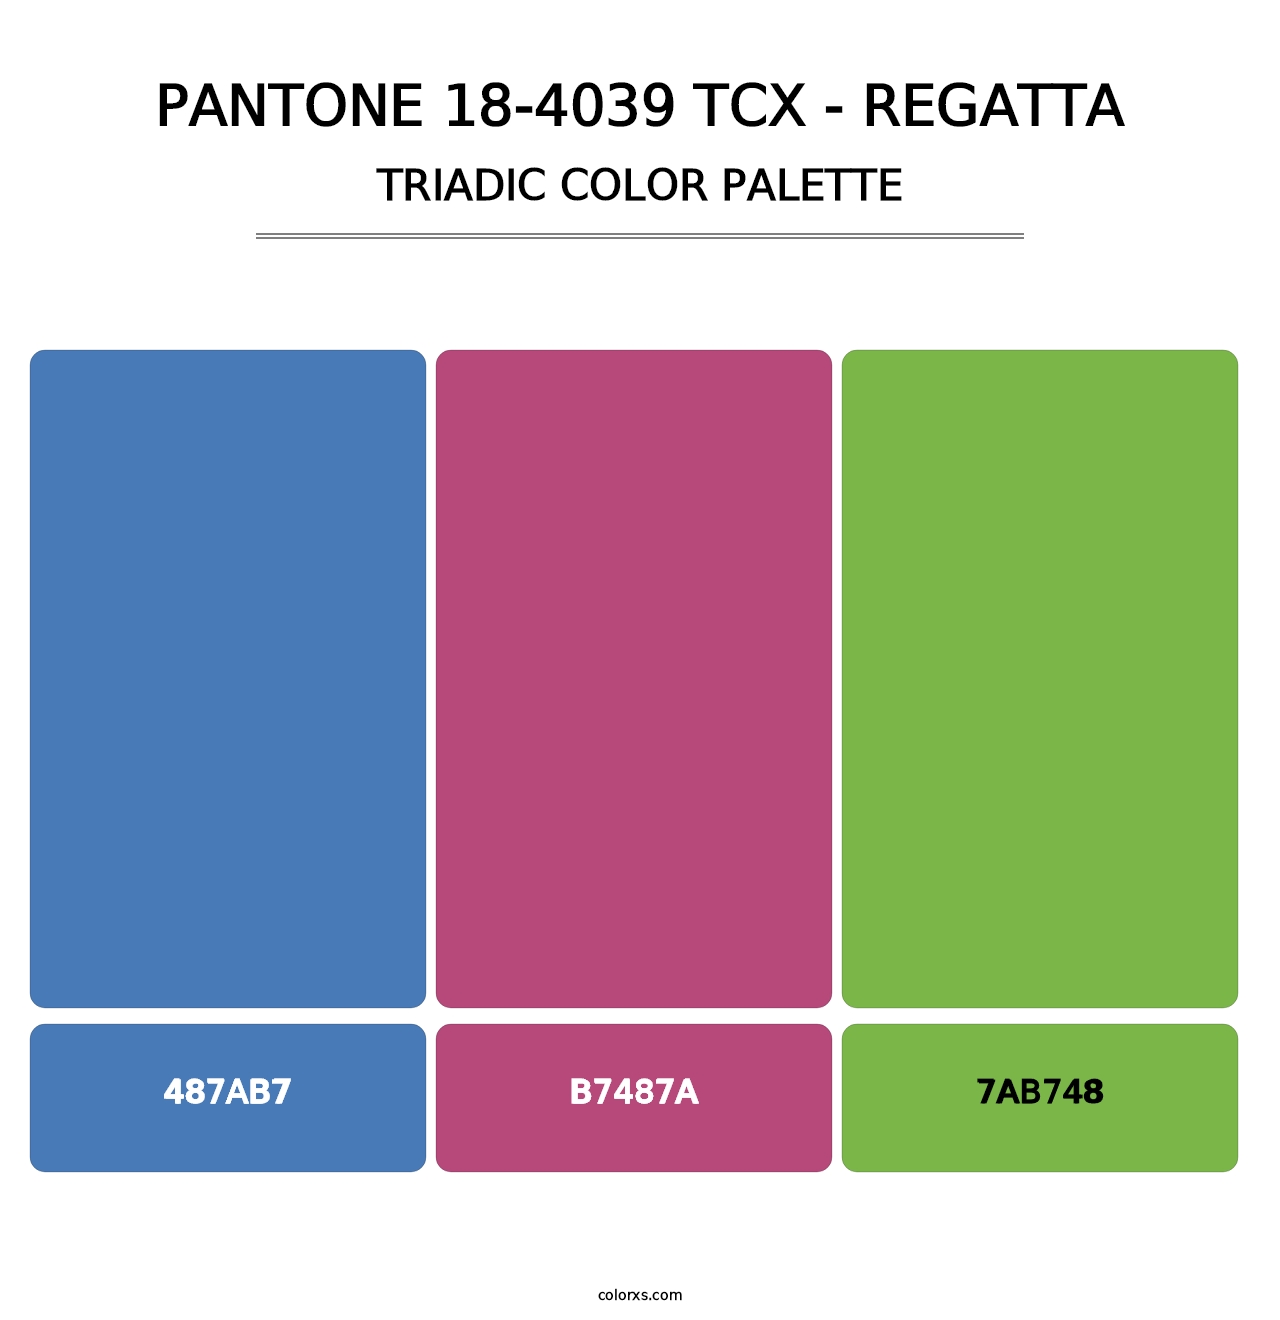 PANTONE 18-4039 TCX - Regatta - Triadic Color Palette